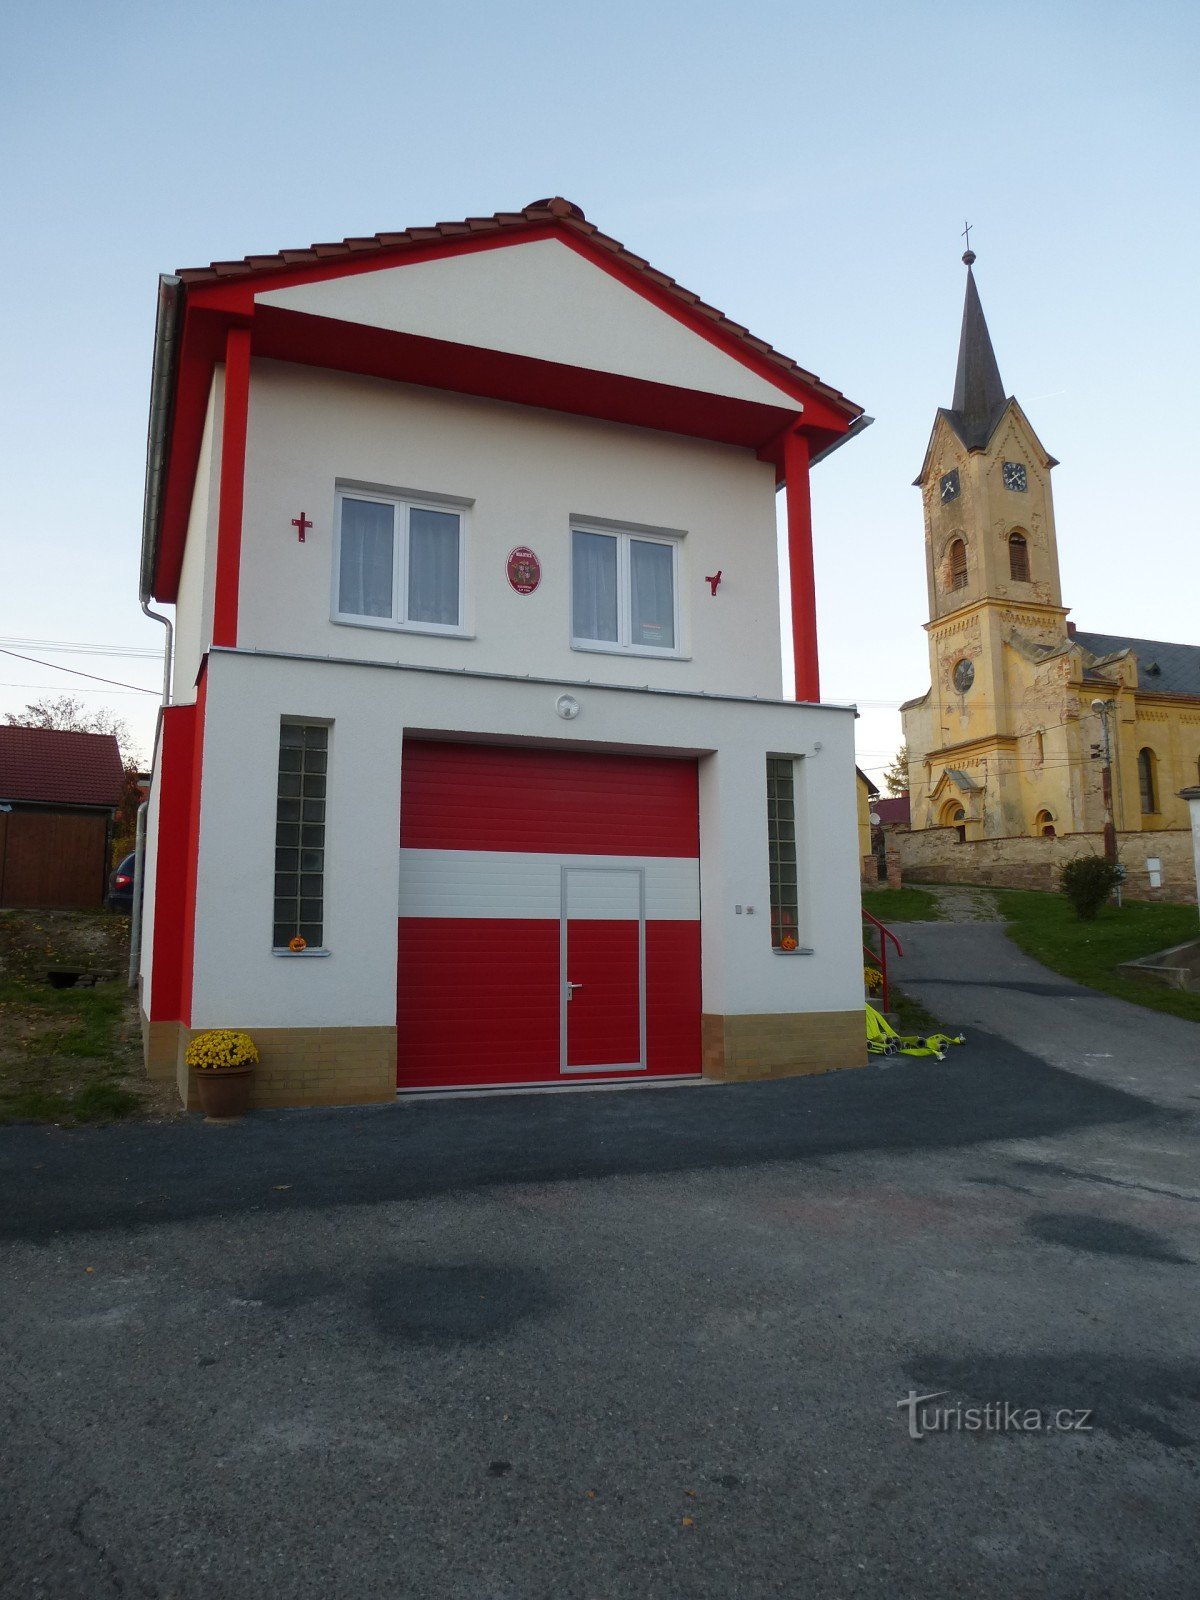 Estación de bomberos e iglesia de St. mateo